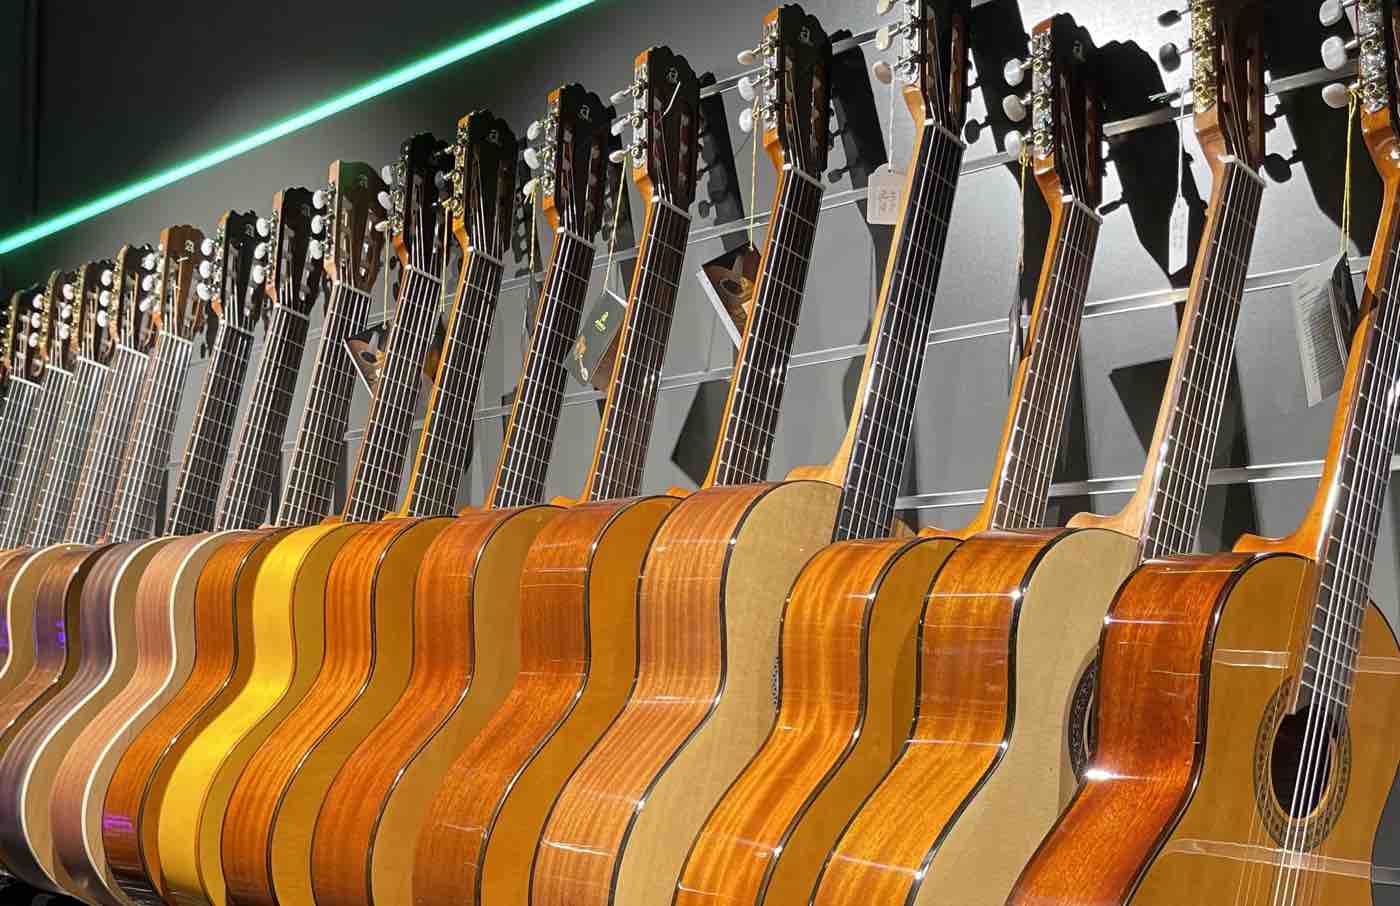 Guitarras Alhambra, las mejores guitarras clásicas, acústicas y flamencas hechas a mano